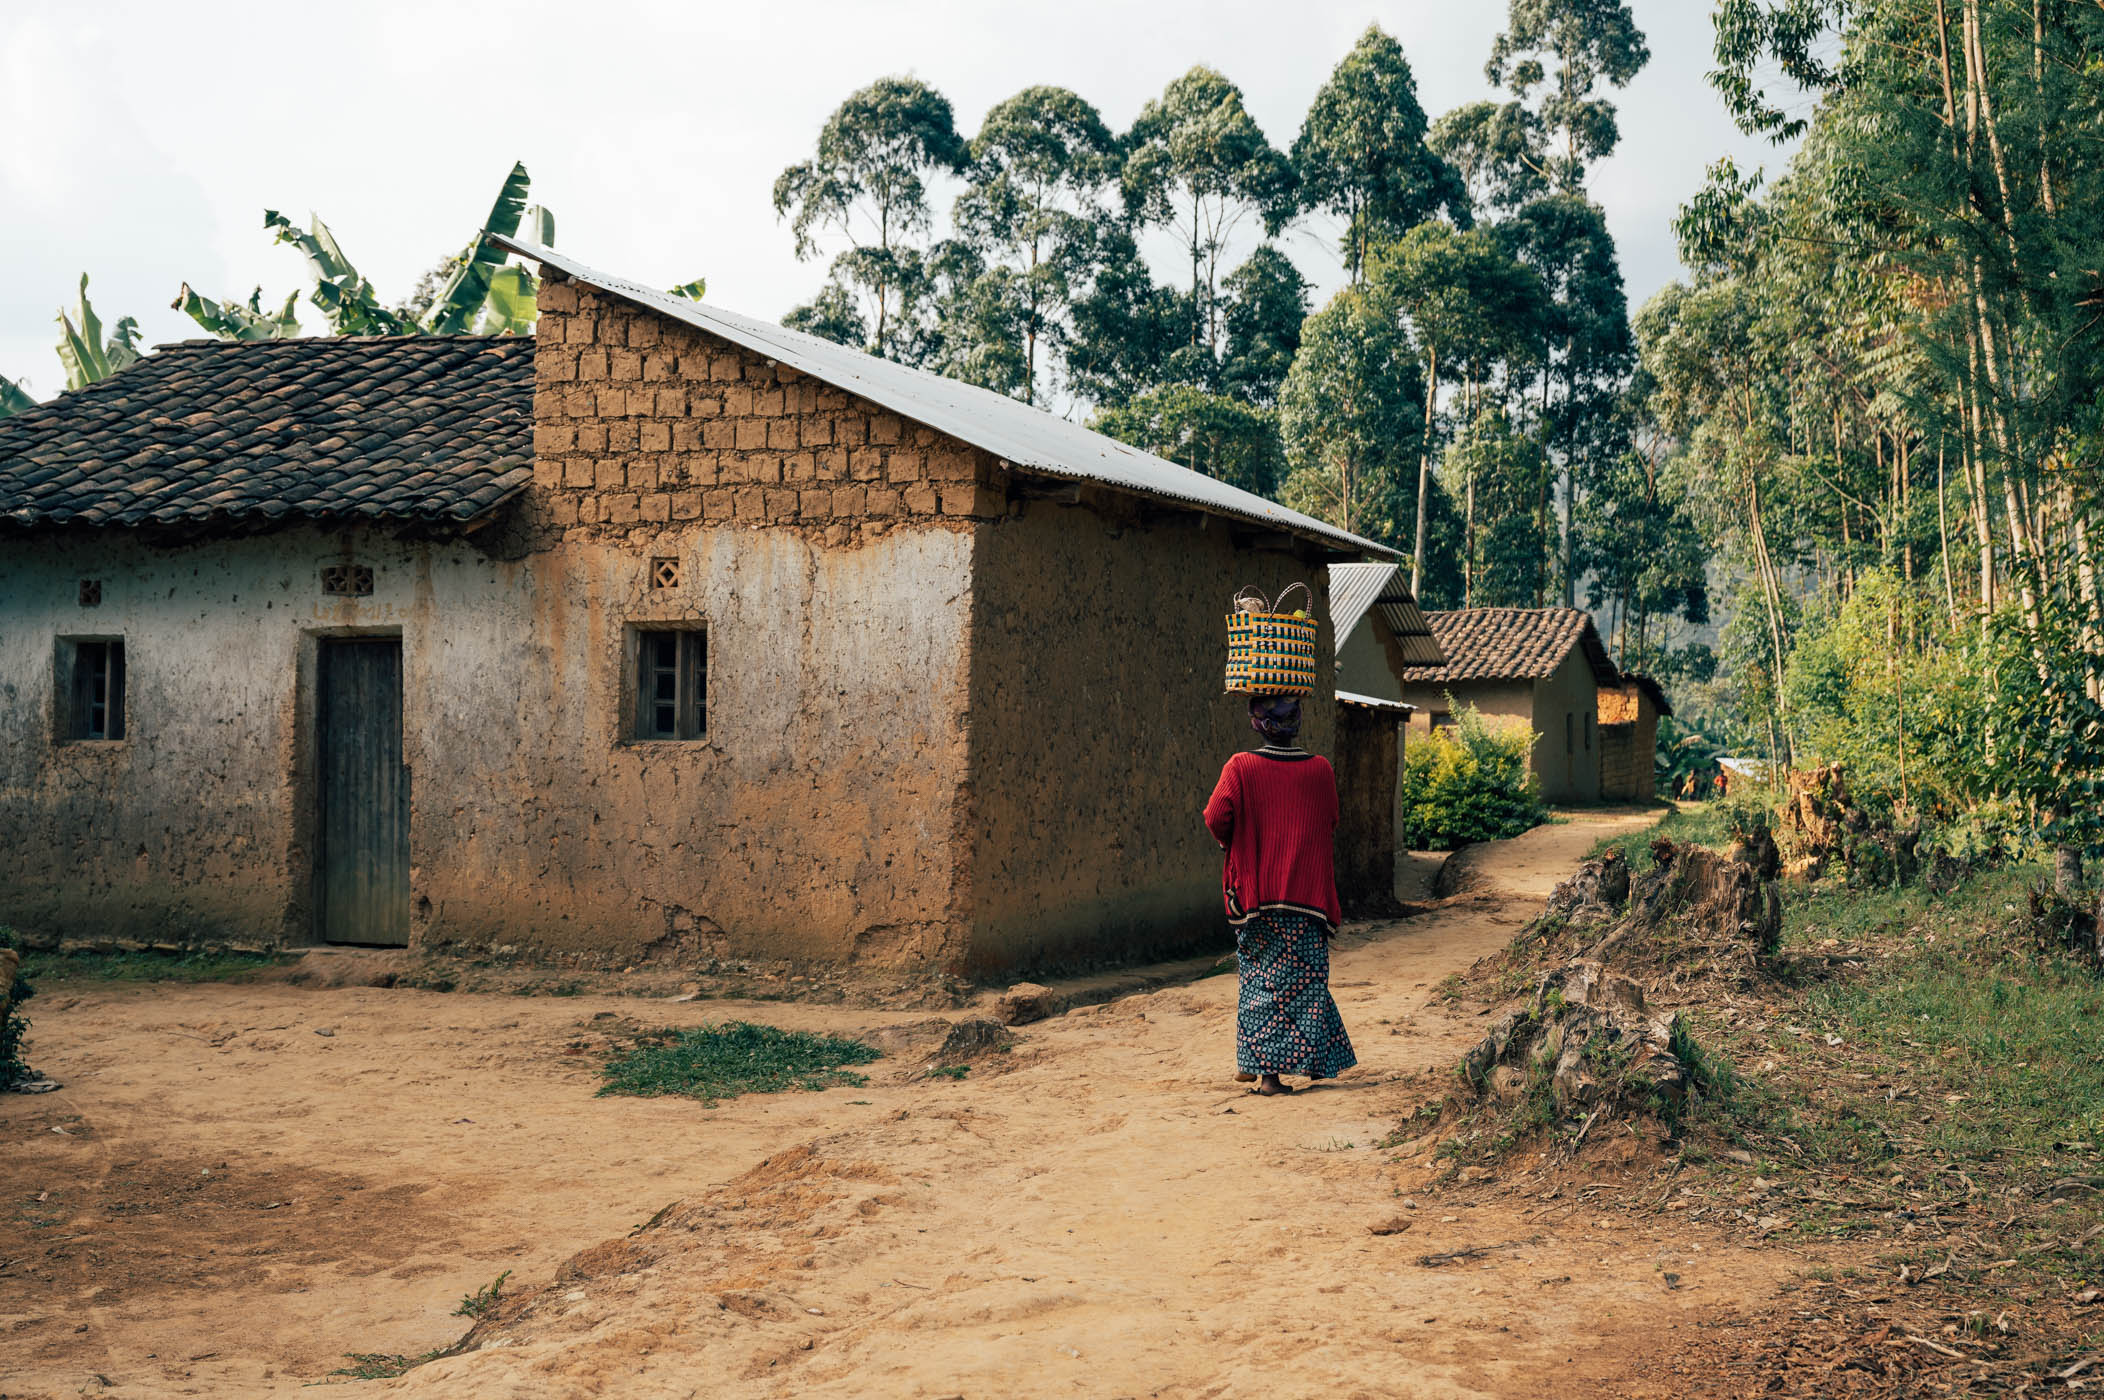 Banda village next to Nyungwe National Park in Rwanda